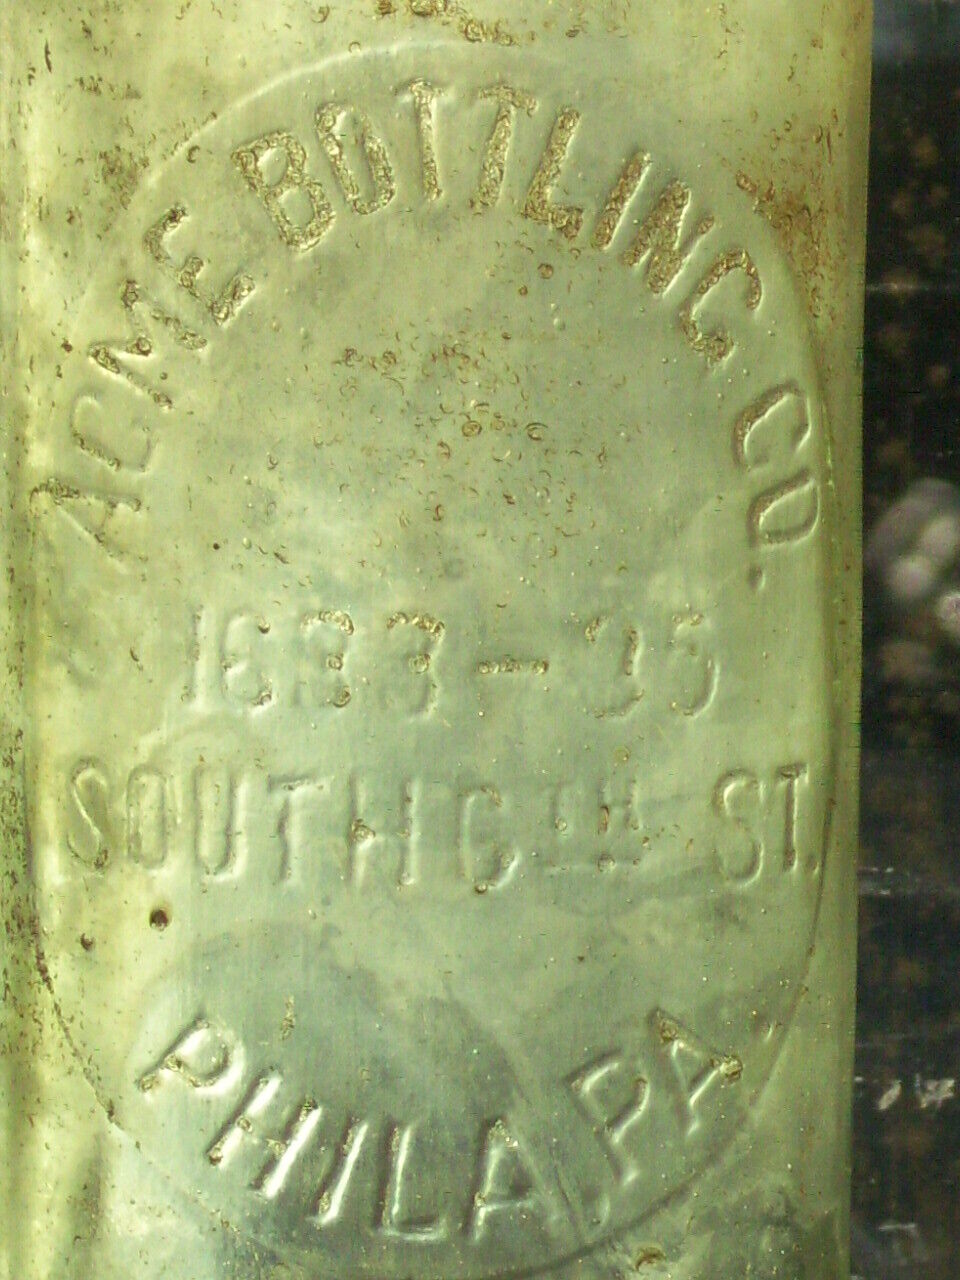 8 oz. Acme Bottling Works 1633 - 35 South 6th st. Philadelphia, Pa. glass bottle